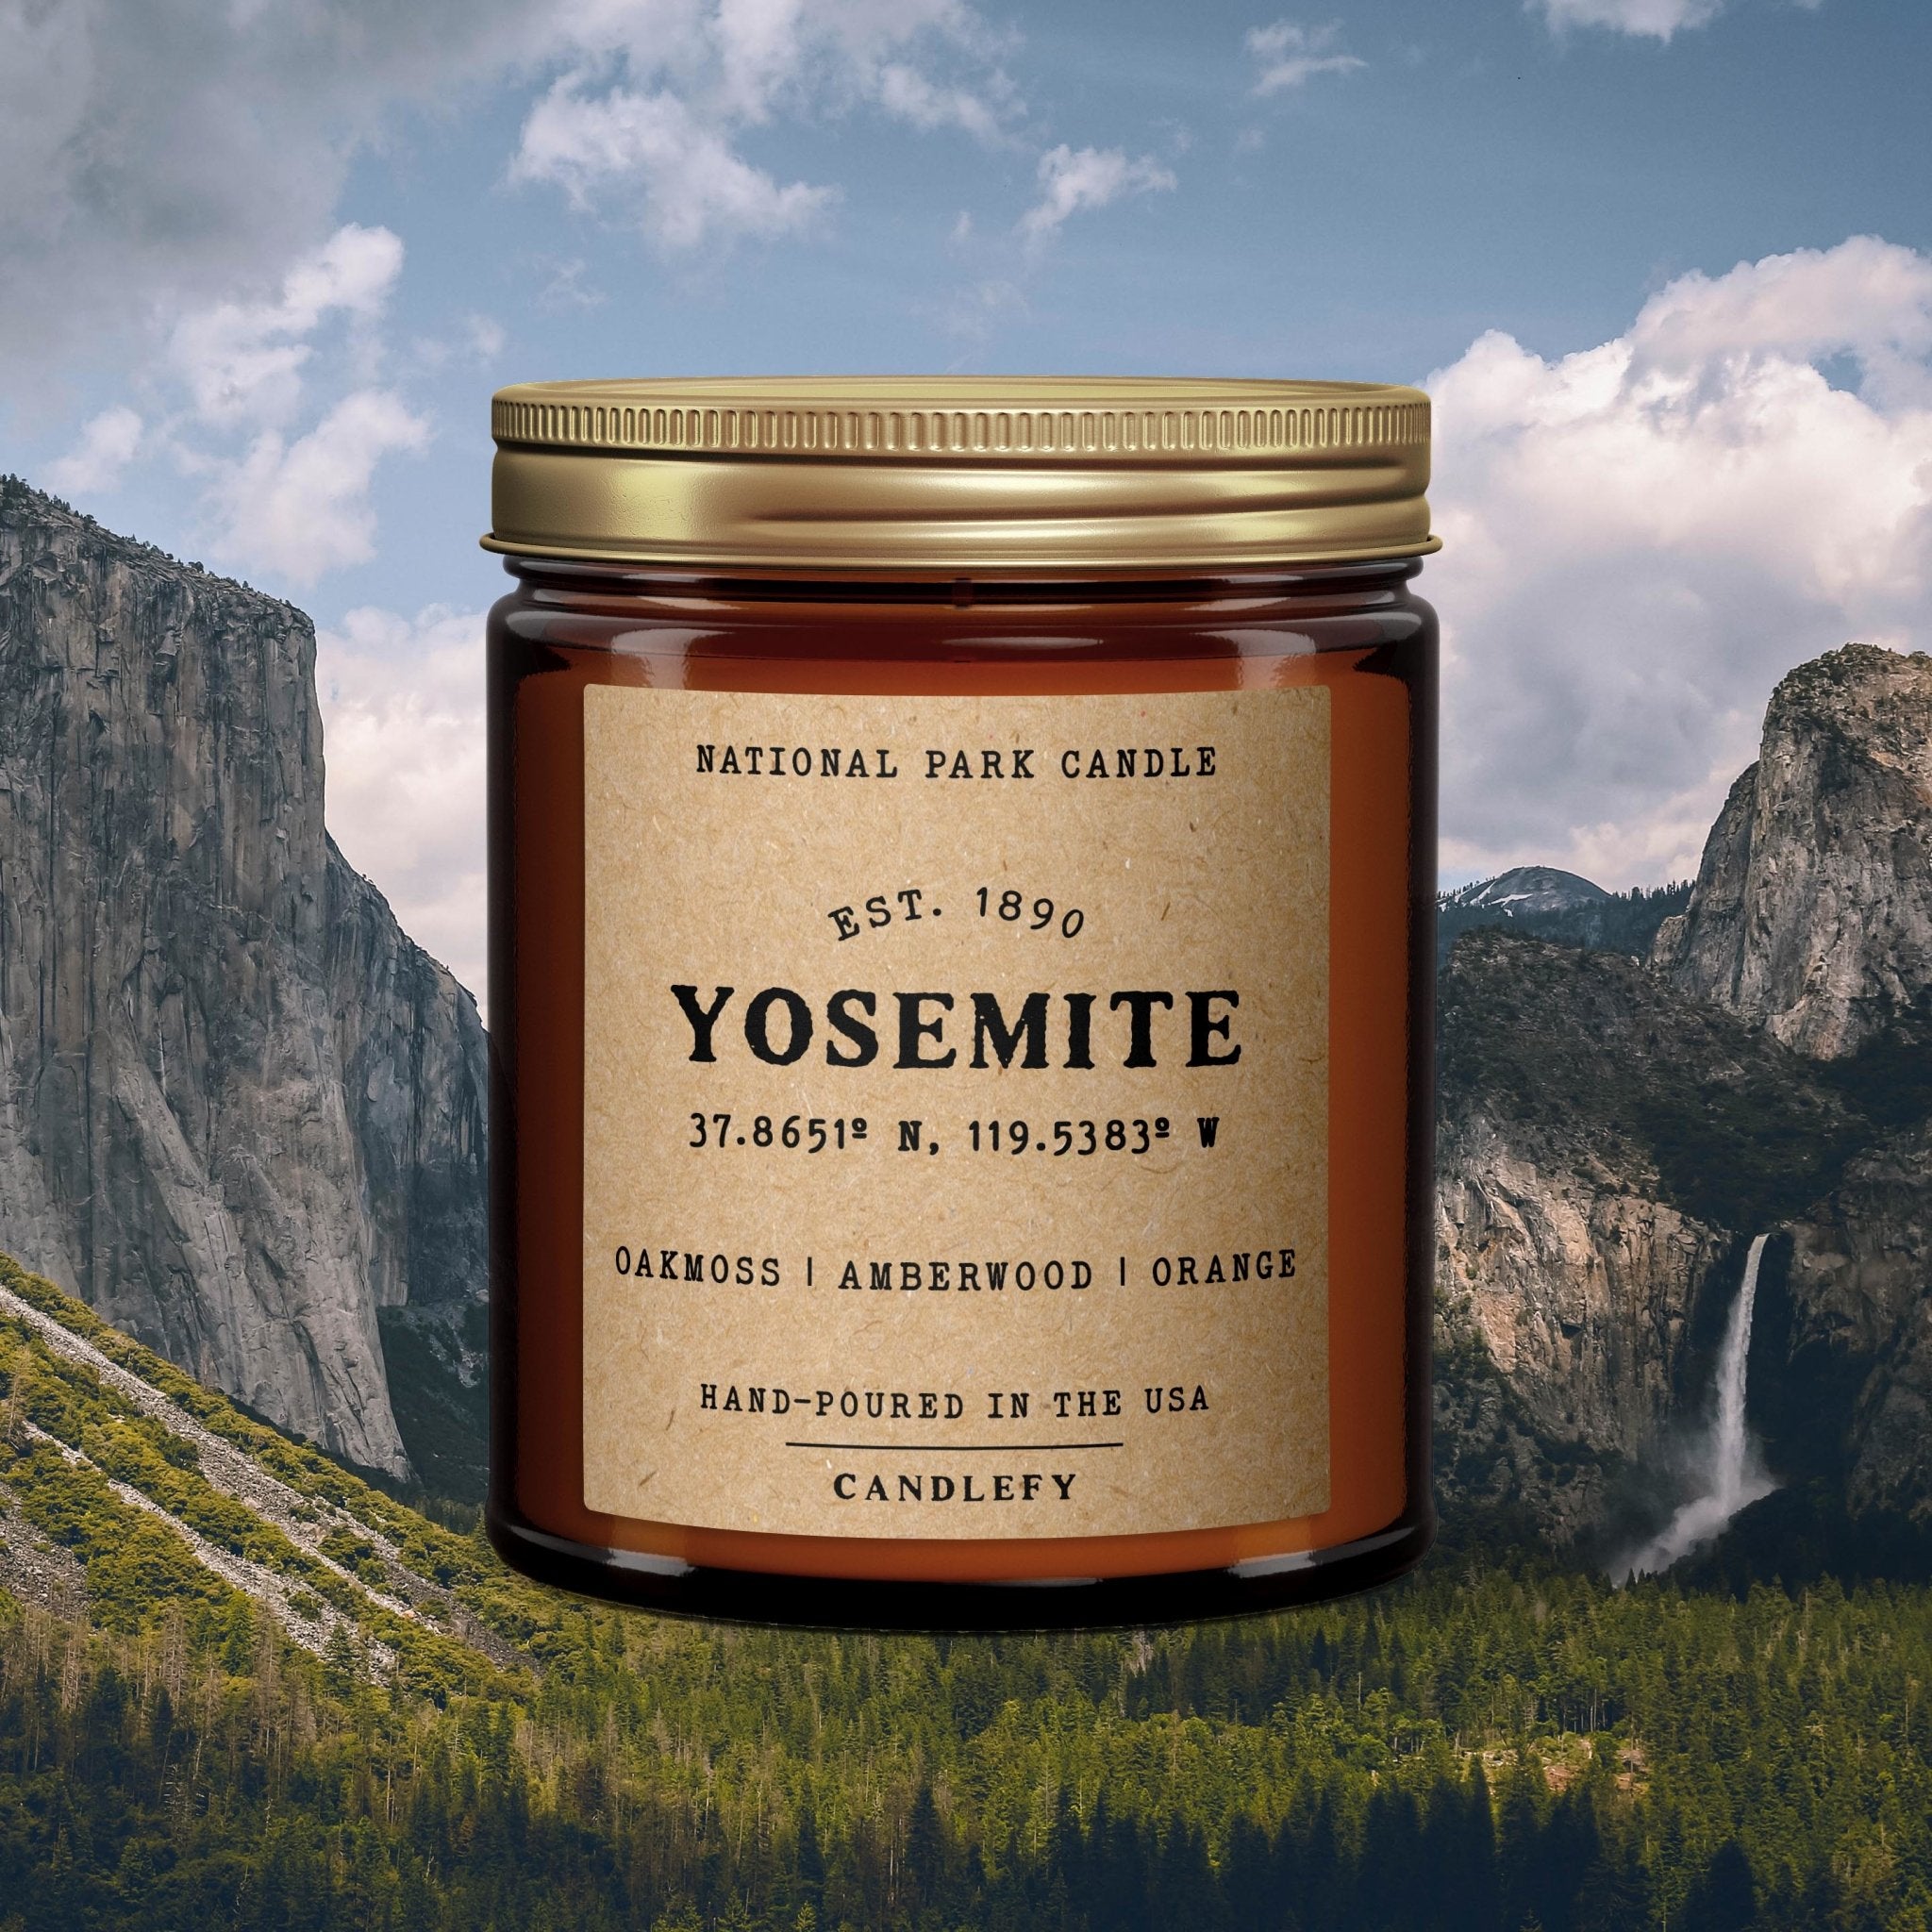 Yosemite National Park Candle - Candlefy